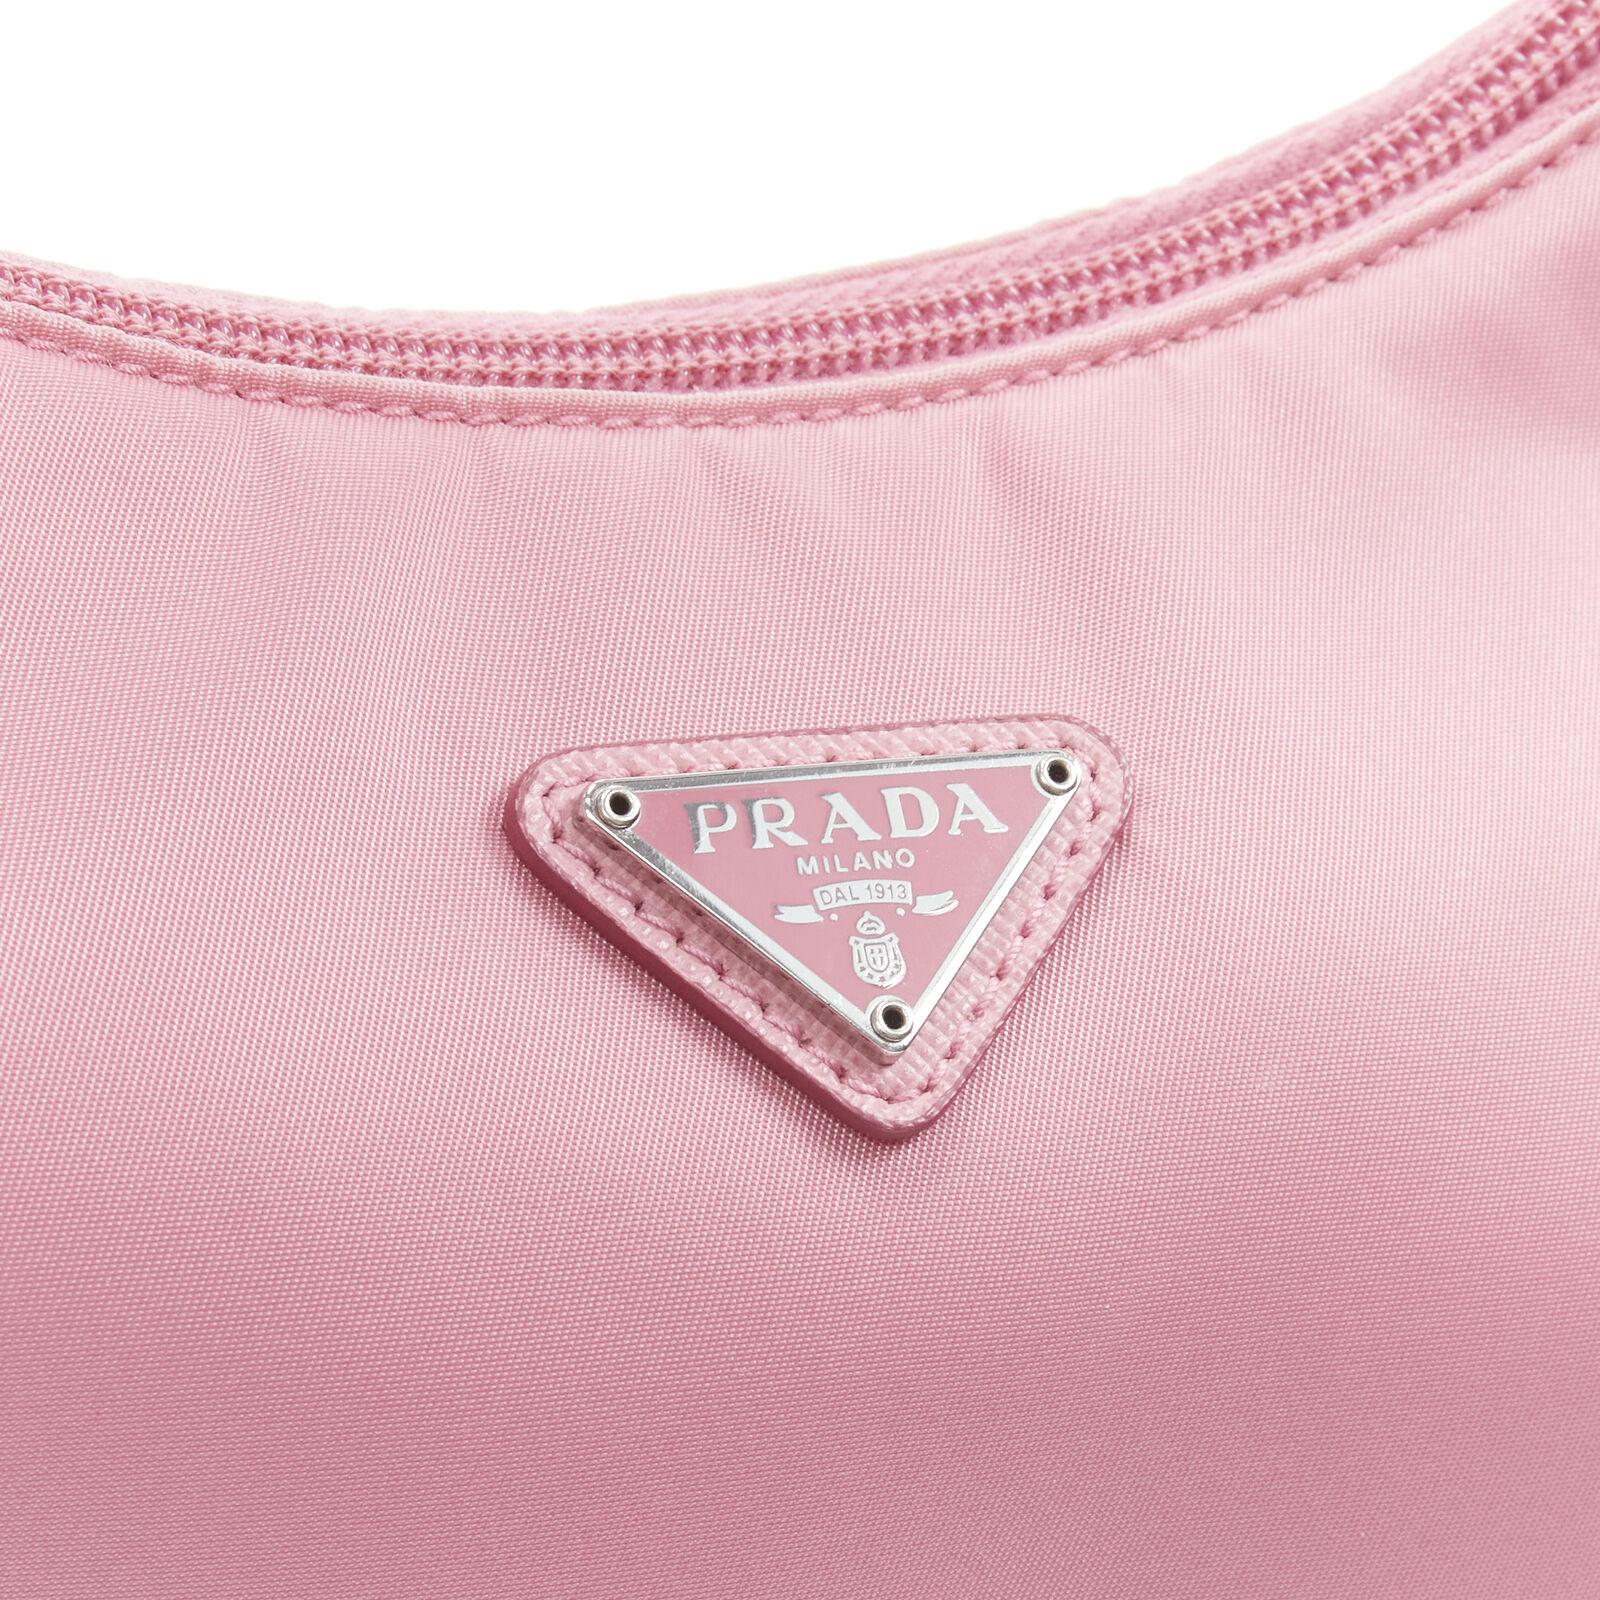 PRADA Re Edition 200 pink Tessuto Nylon saffiano trim underarm bag 9